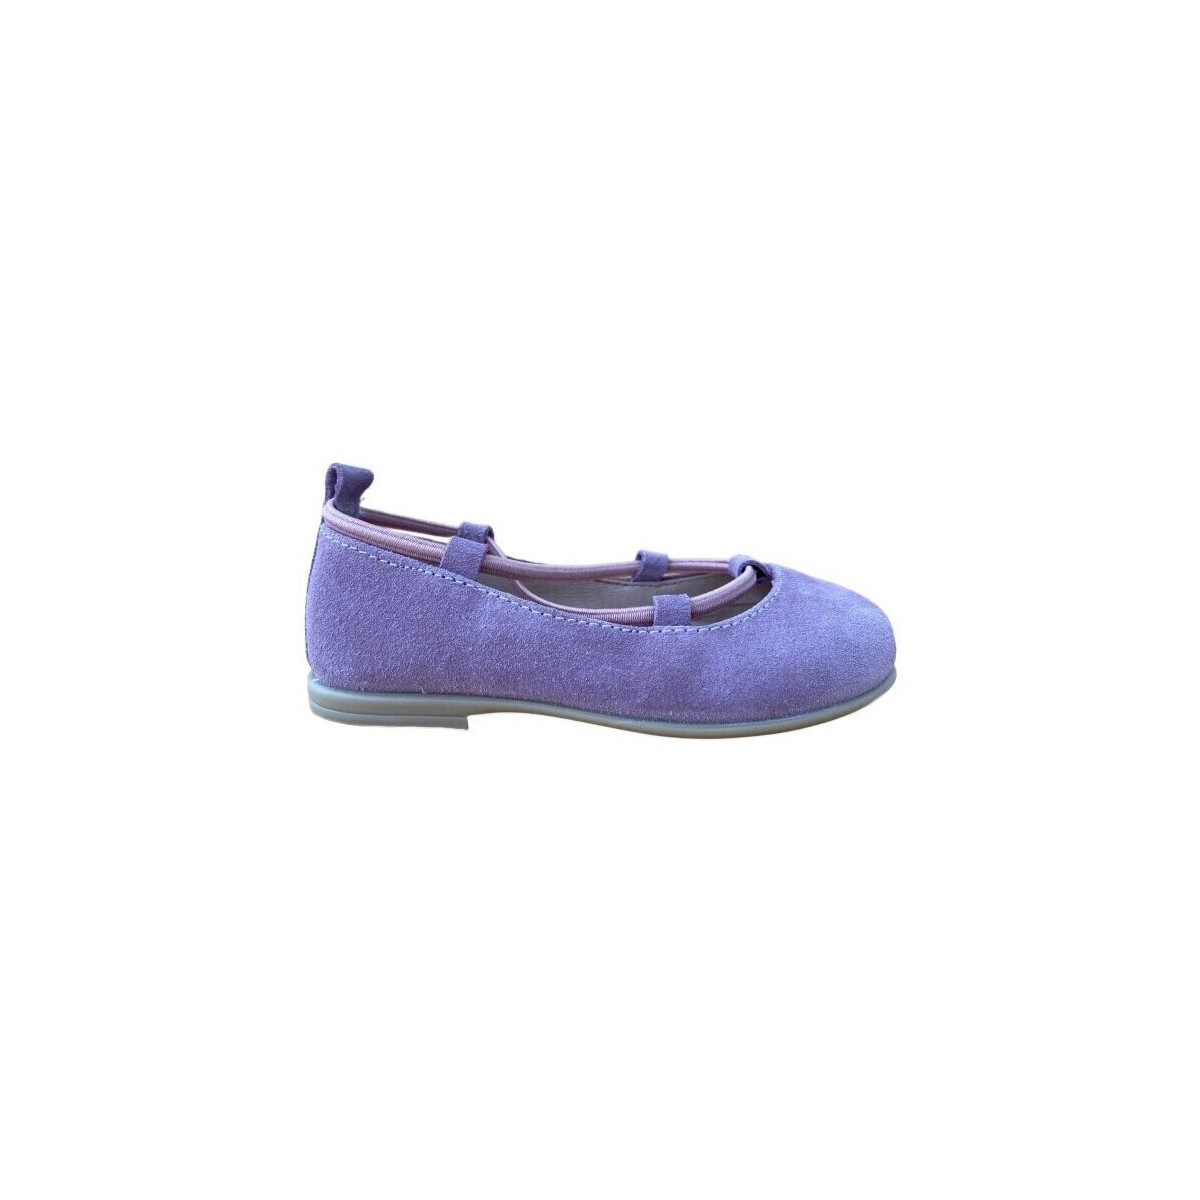 Παπούτσια Κορίτσι Μπαλαρίνες Gorila 28355-18 Violet